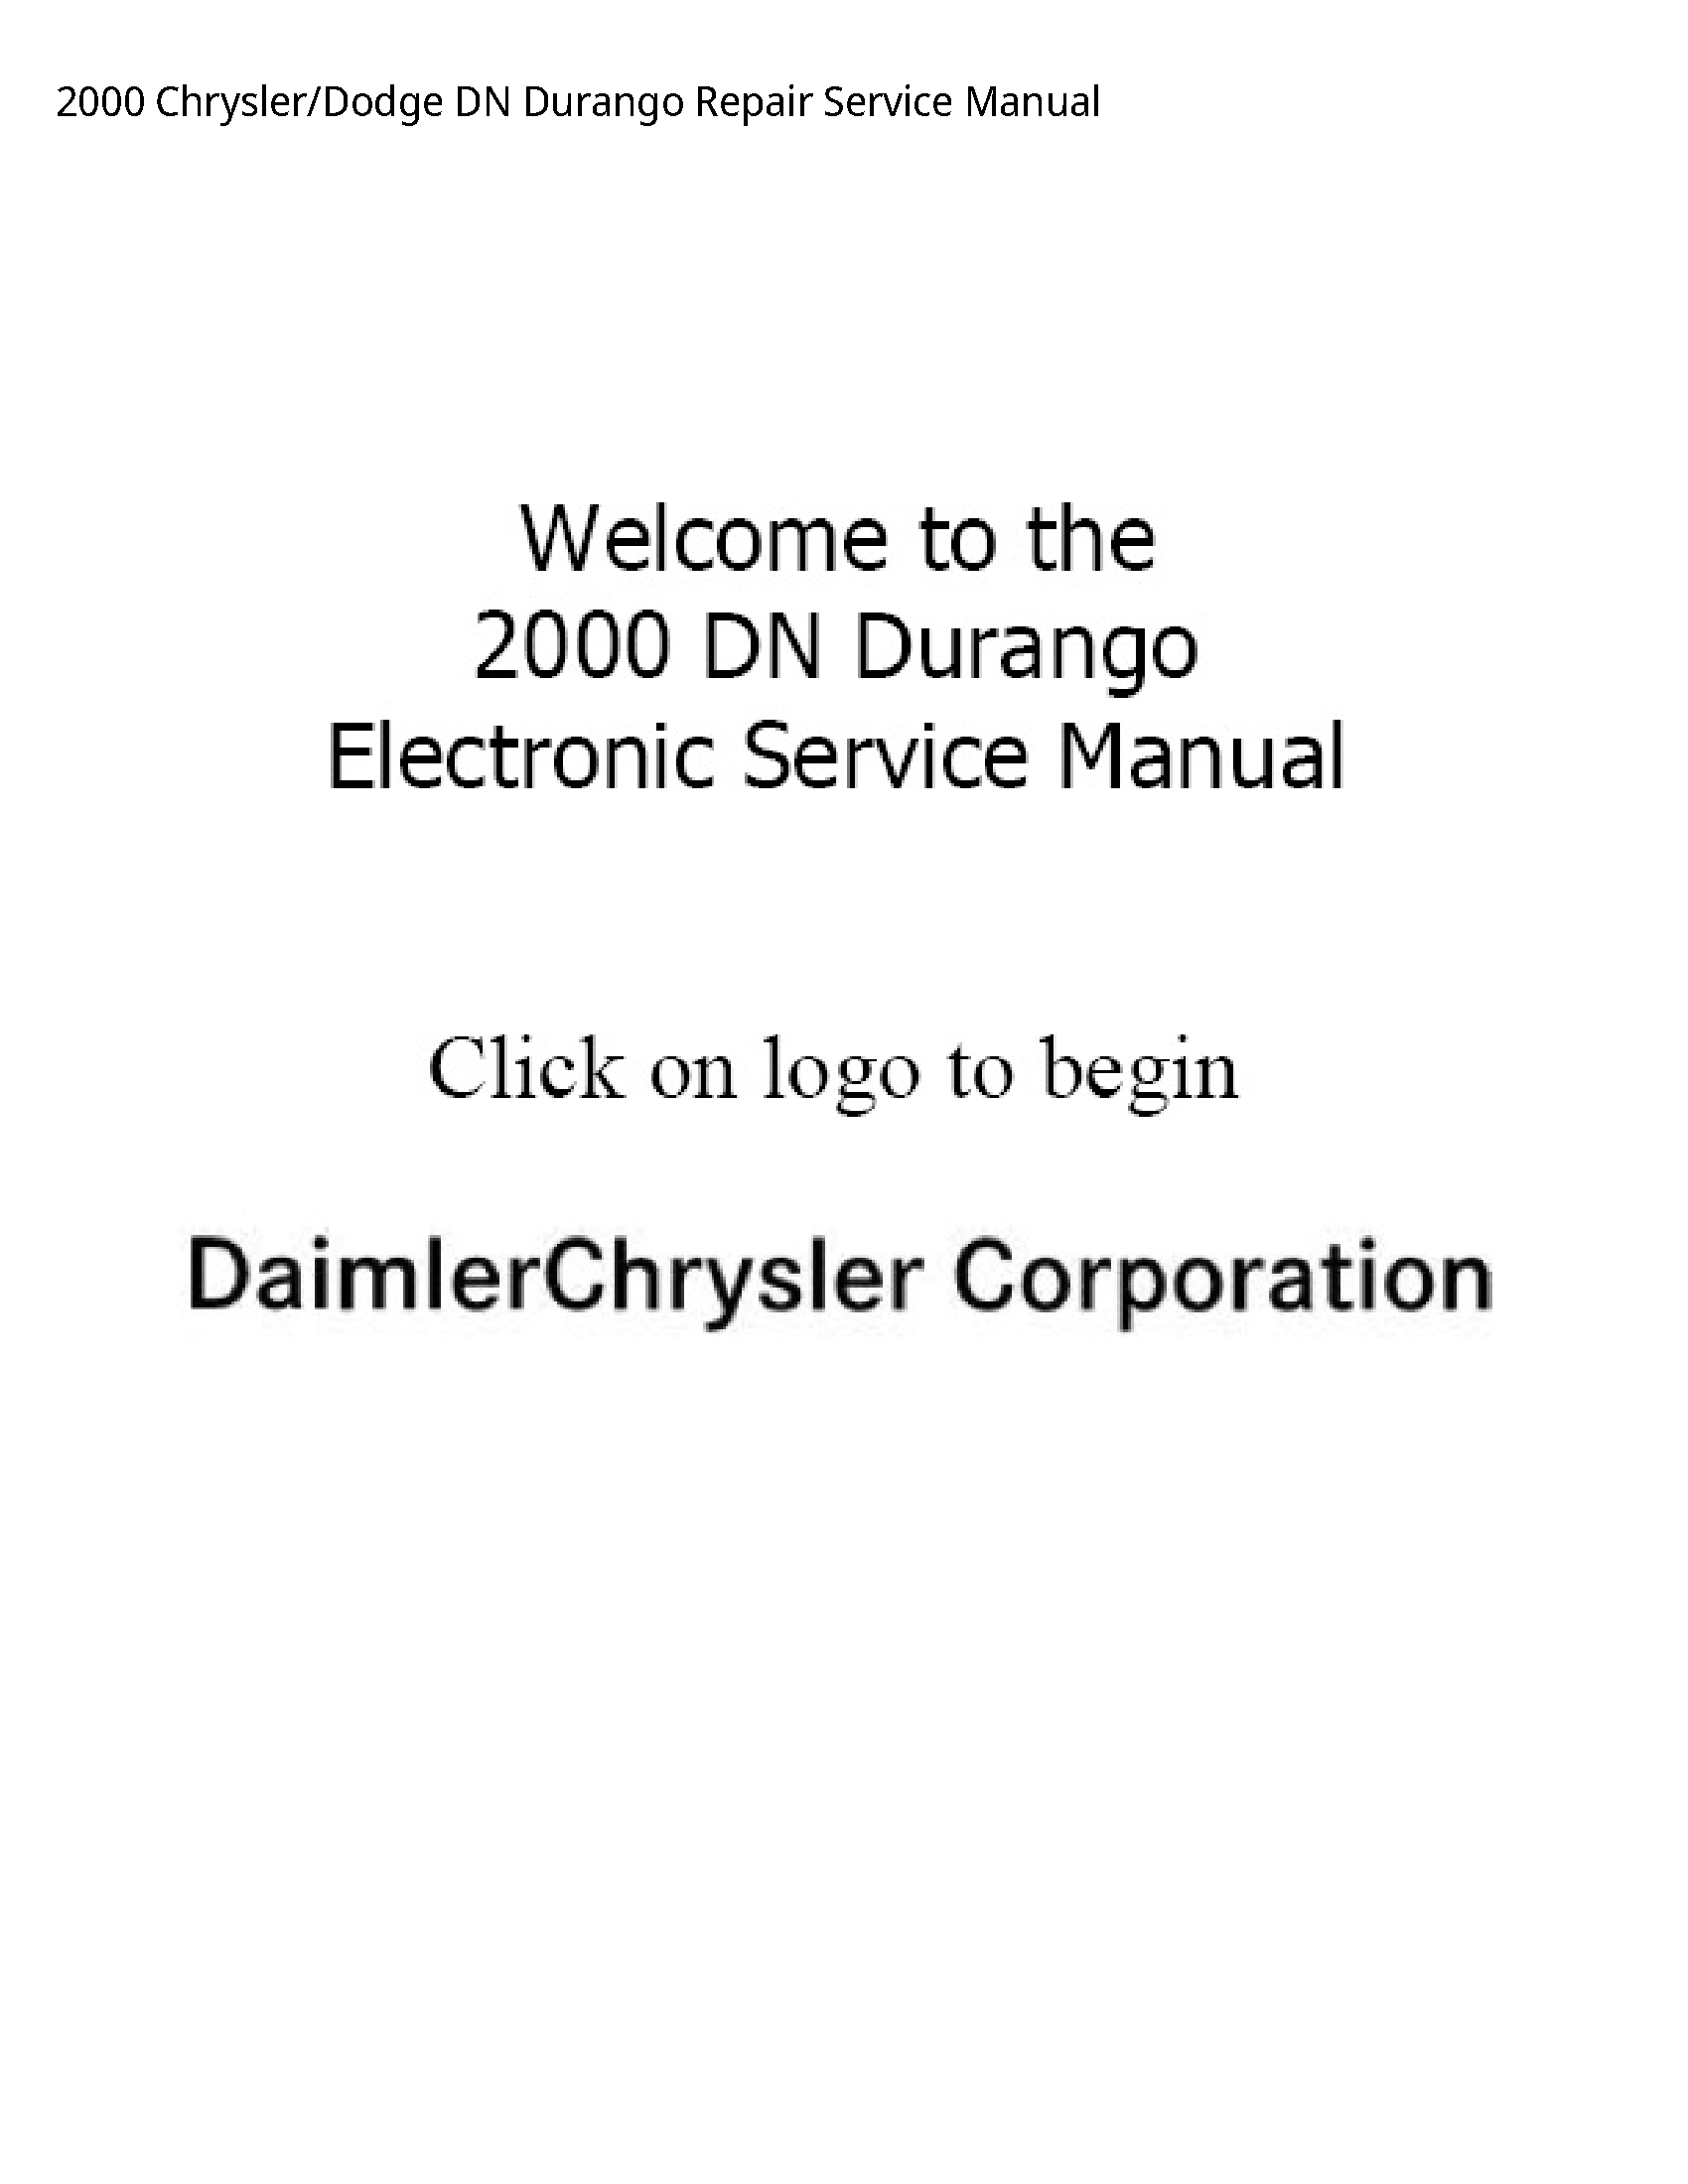 Chrysler /Dodge DN Durango Repair Service manual